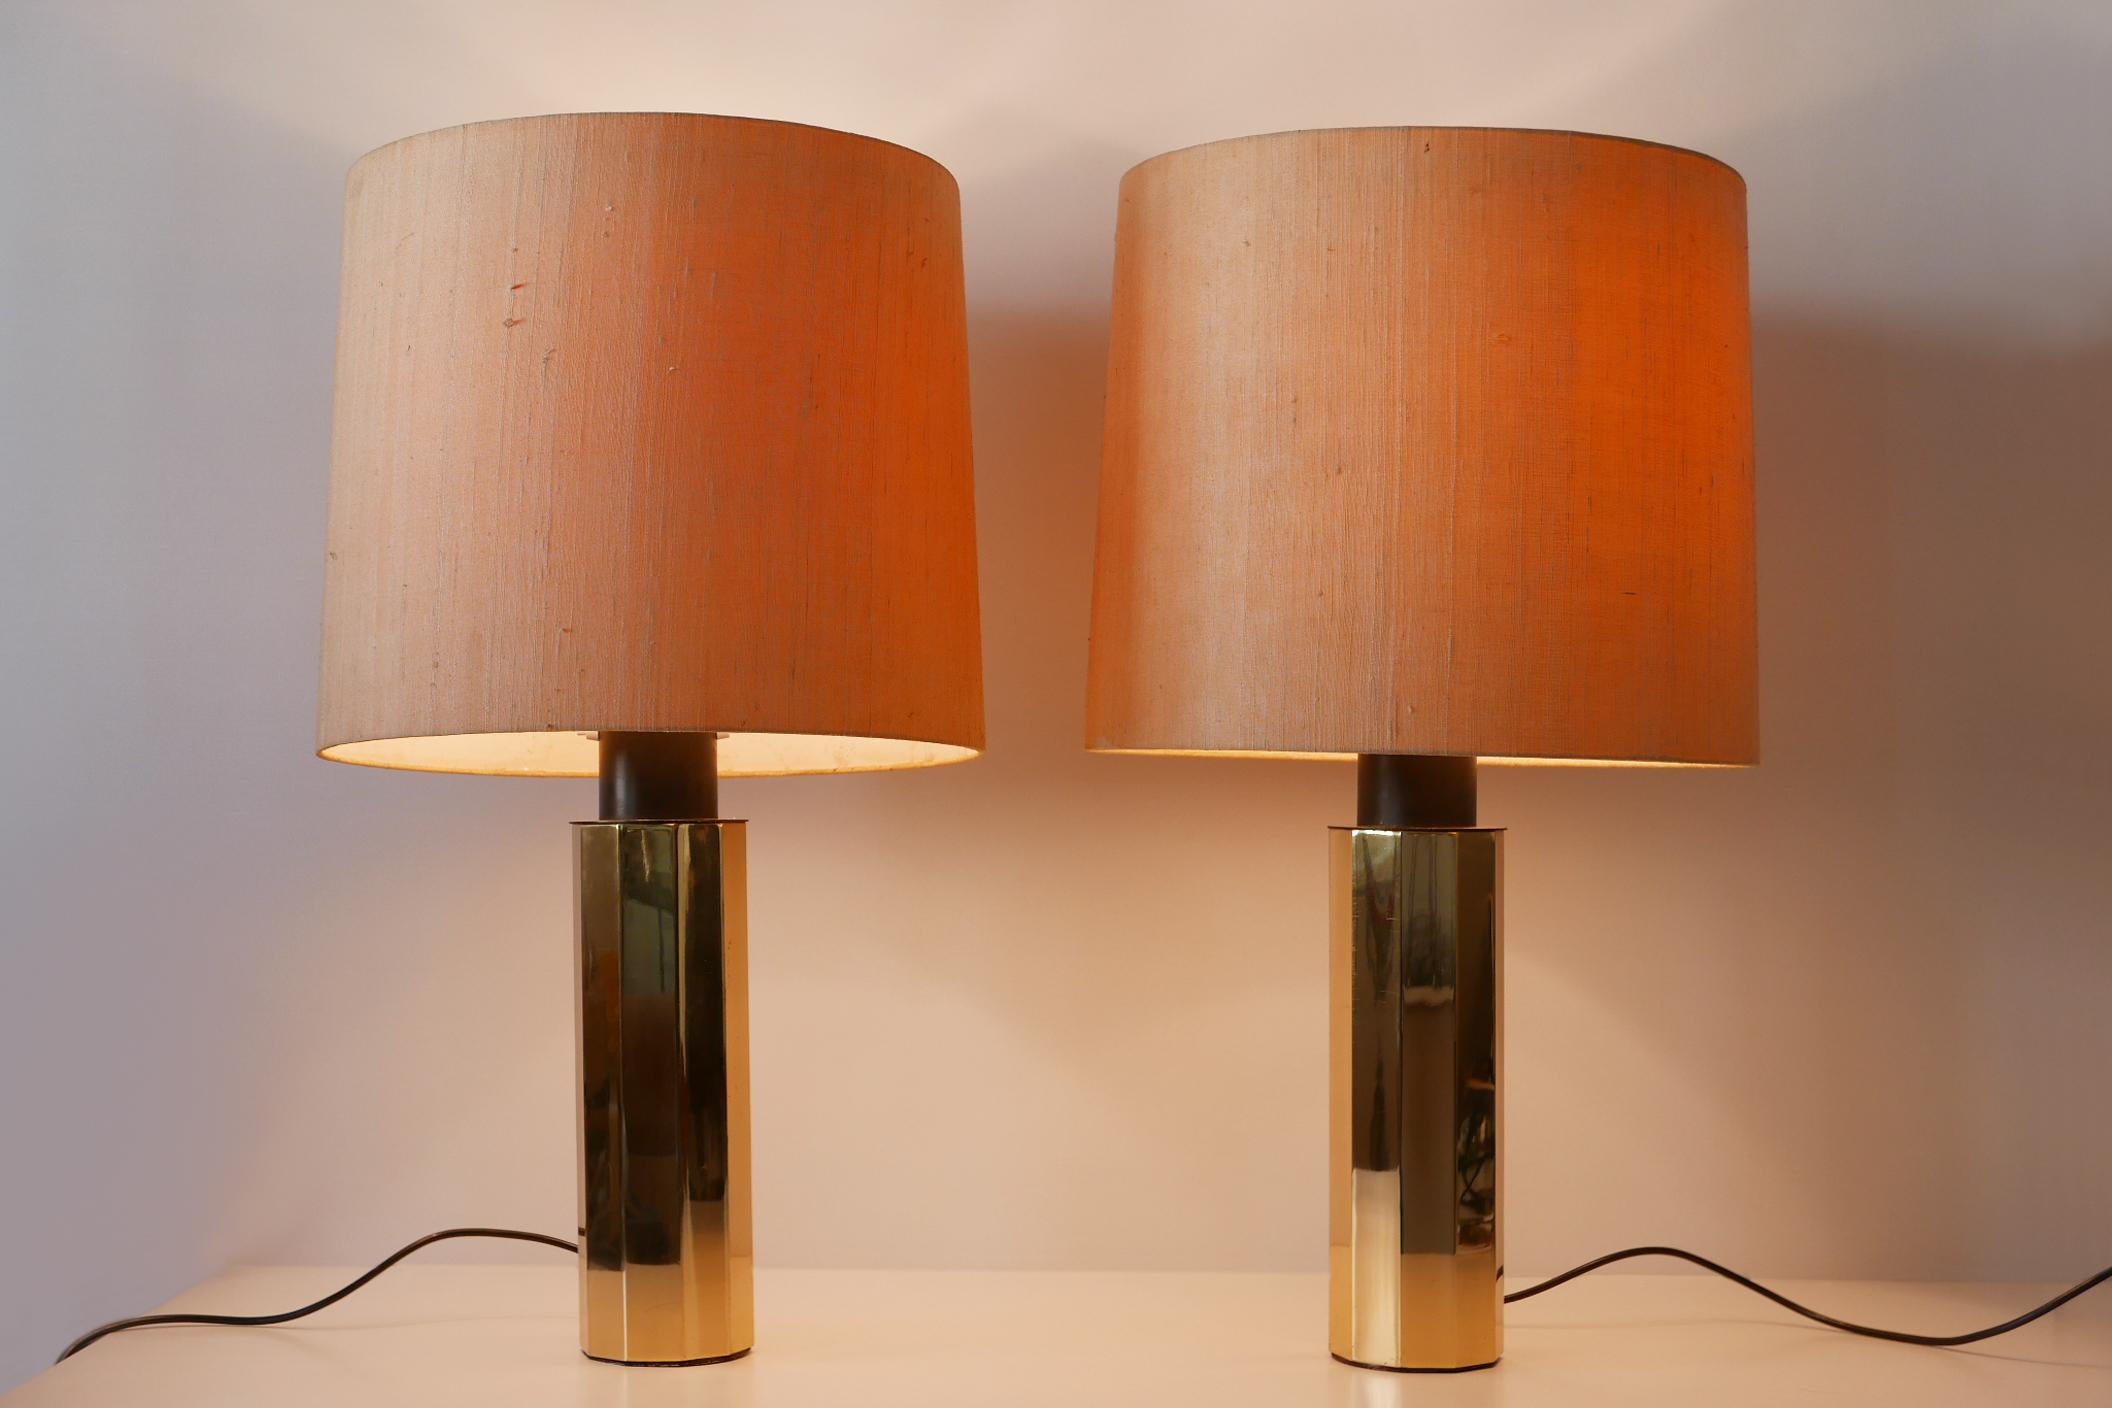 Satz von zwei großen, außergewöhnlichen und eleganten dekagonalen Messing-Tischlampen aus der Jahrhundertmitte. Entworfen und hergestellt wahrscheinlich in den 1960er Jahren in Deutschland.

Ausgeführt in poliertem Messing, Aluminium, kommt jede